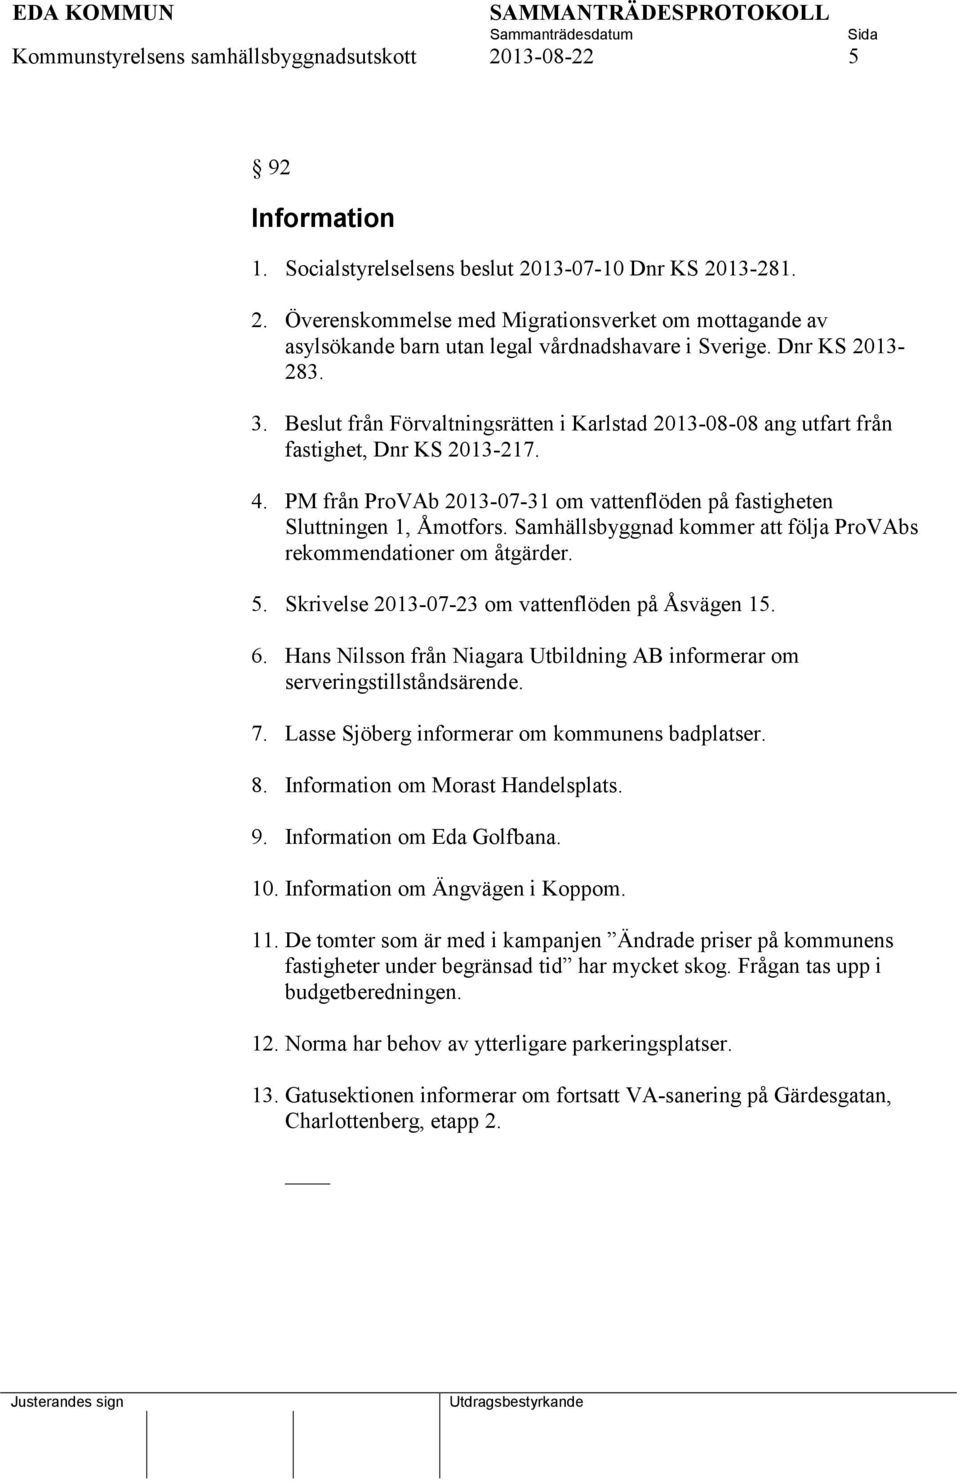 PM från ProVAb 2013-07-31 om vattenflöden på fastigheten Sluttningen 1, Åmotfors. Samhällsbyggnad kommer att följa ProVAbs rekommendationer om åtgärder. 5.